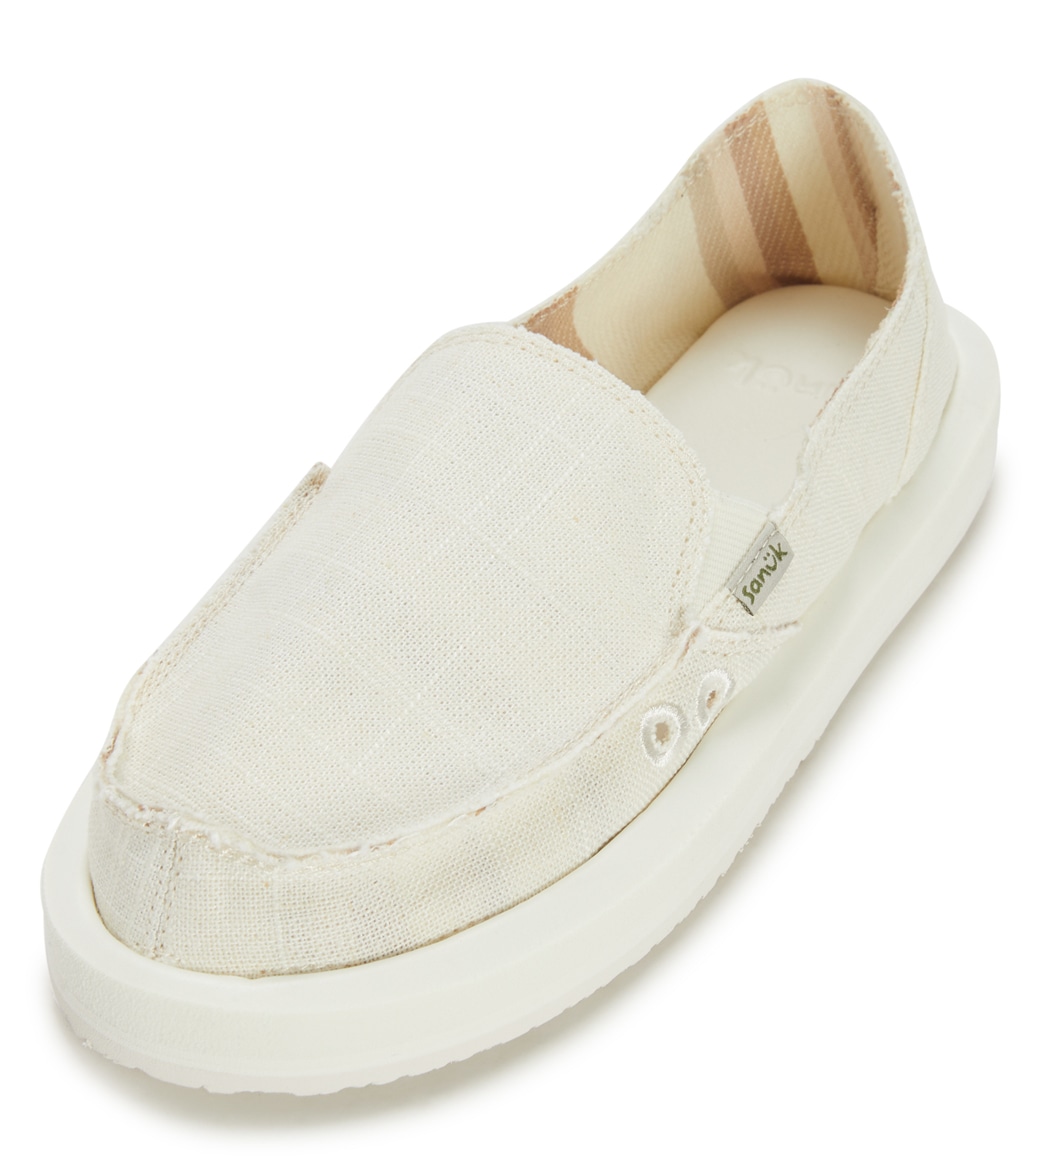 Sanuk Women's W Donna Soft Top Hemp Slip On Shoes Shoes Shoe - White 05 100% Rubber - Swimoutlet.com